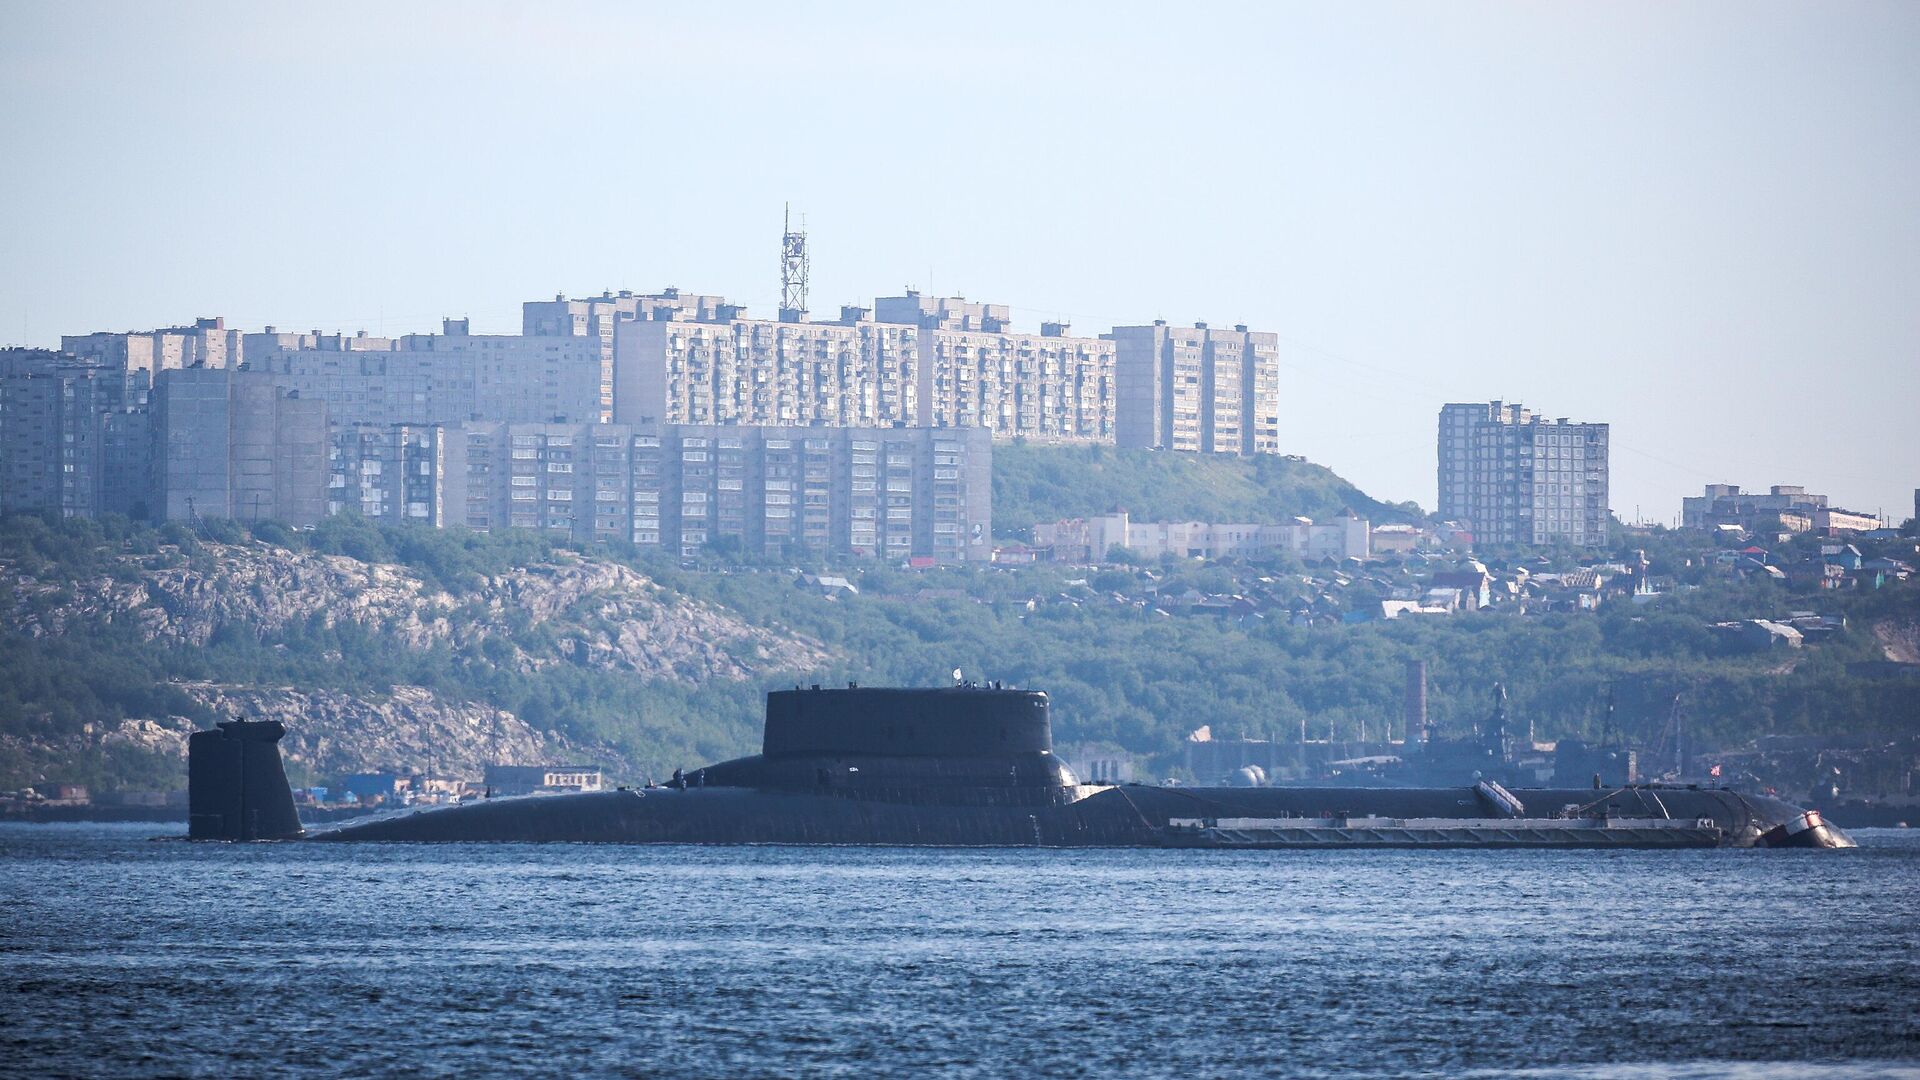 Ракетный подводный крейсер стратегического назначения Дмитрий Донской на рейде в заливе города Североморска - Sputnik Абхазия, 1920, 21.07.2022